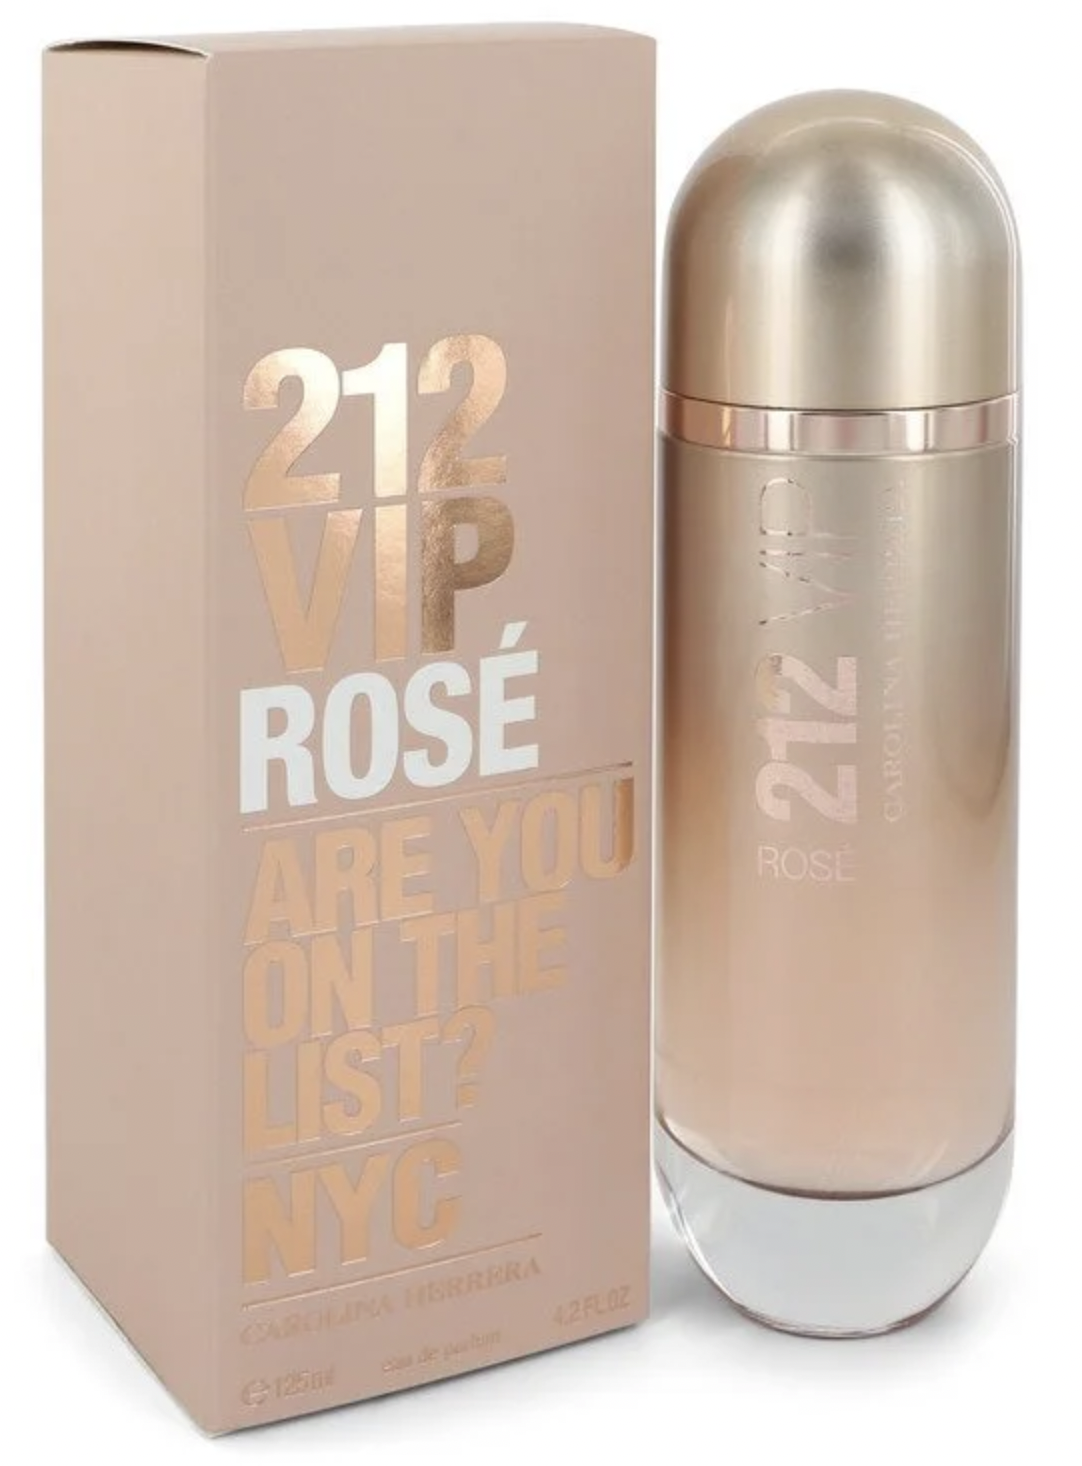 Carolina Herrera 212 Vip Rose Eau De Parfum for Women (125 ml / 4.2 FL OZ)